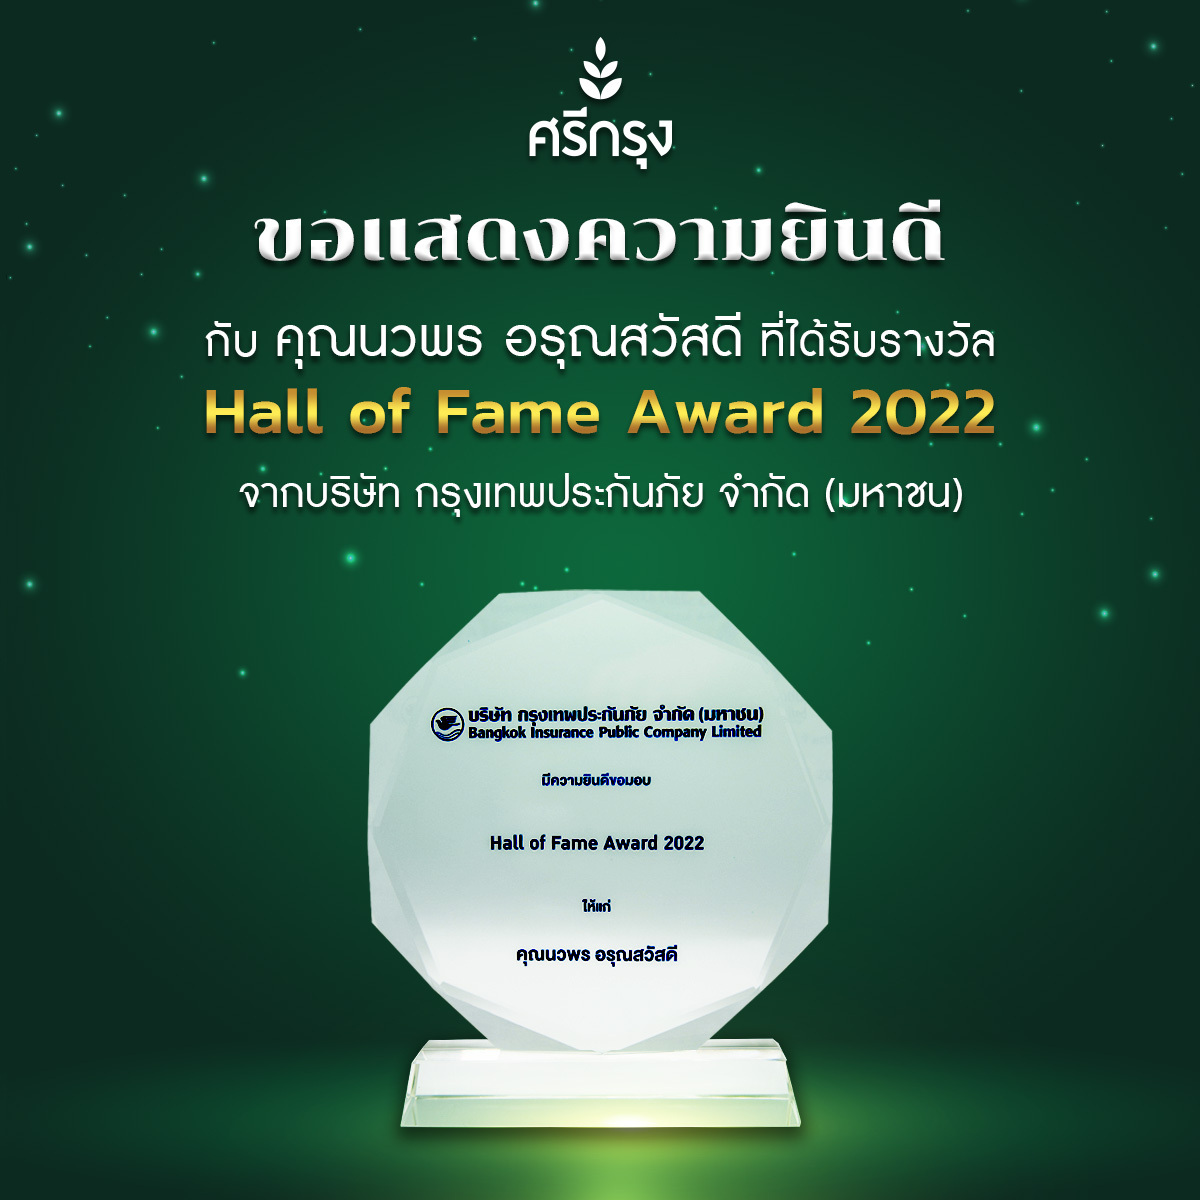 ศรีกรุงโบรคเกอร์ คว้ารางวัล Hall of Fame Award 2022 จากบริษัท กรุงเทพประกันภัย จำกัด (มหาชน)